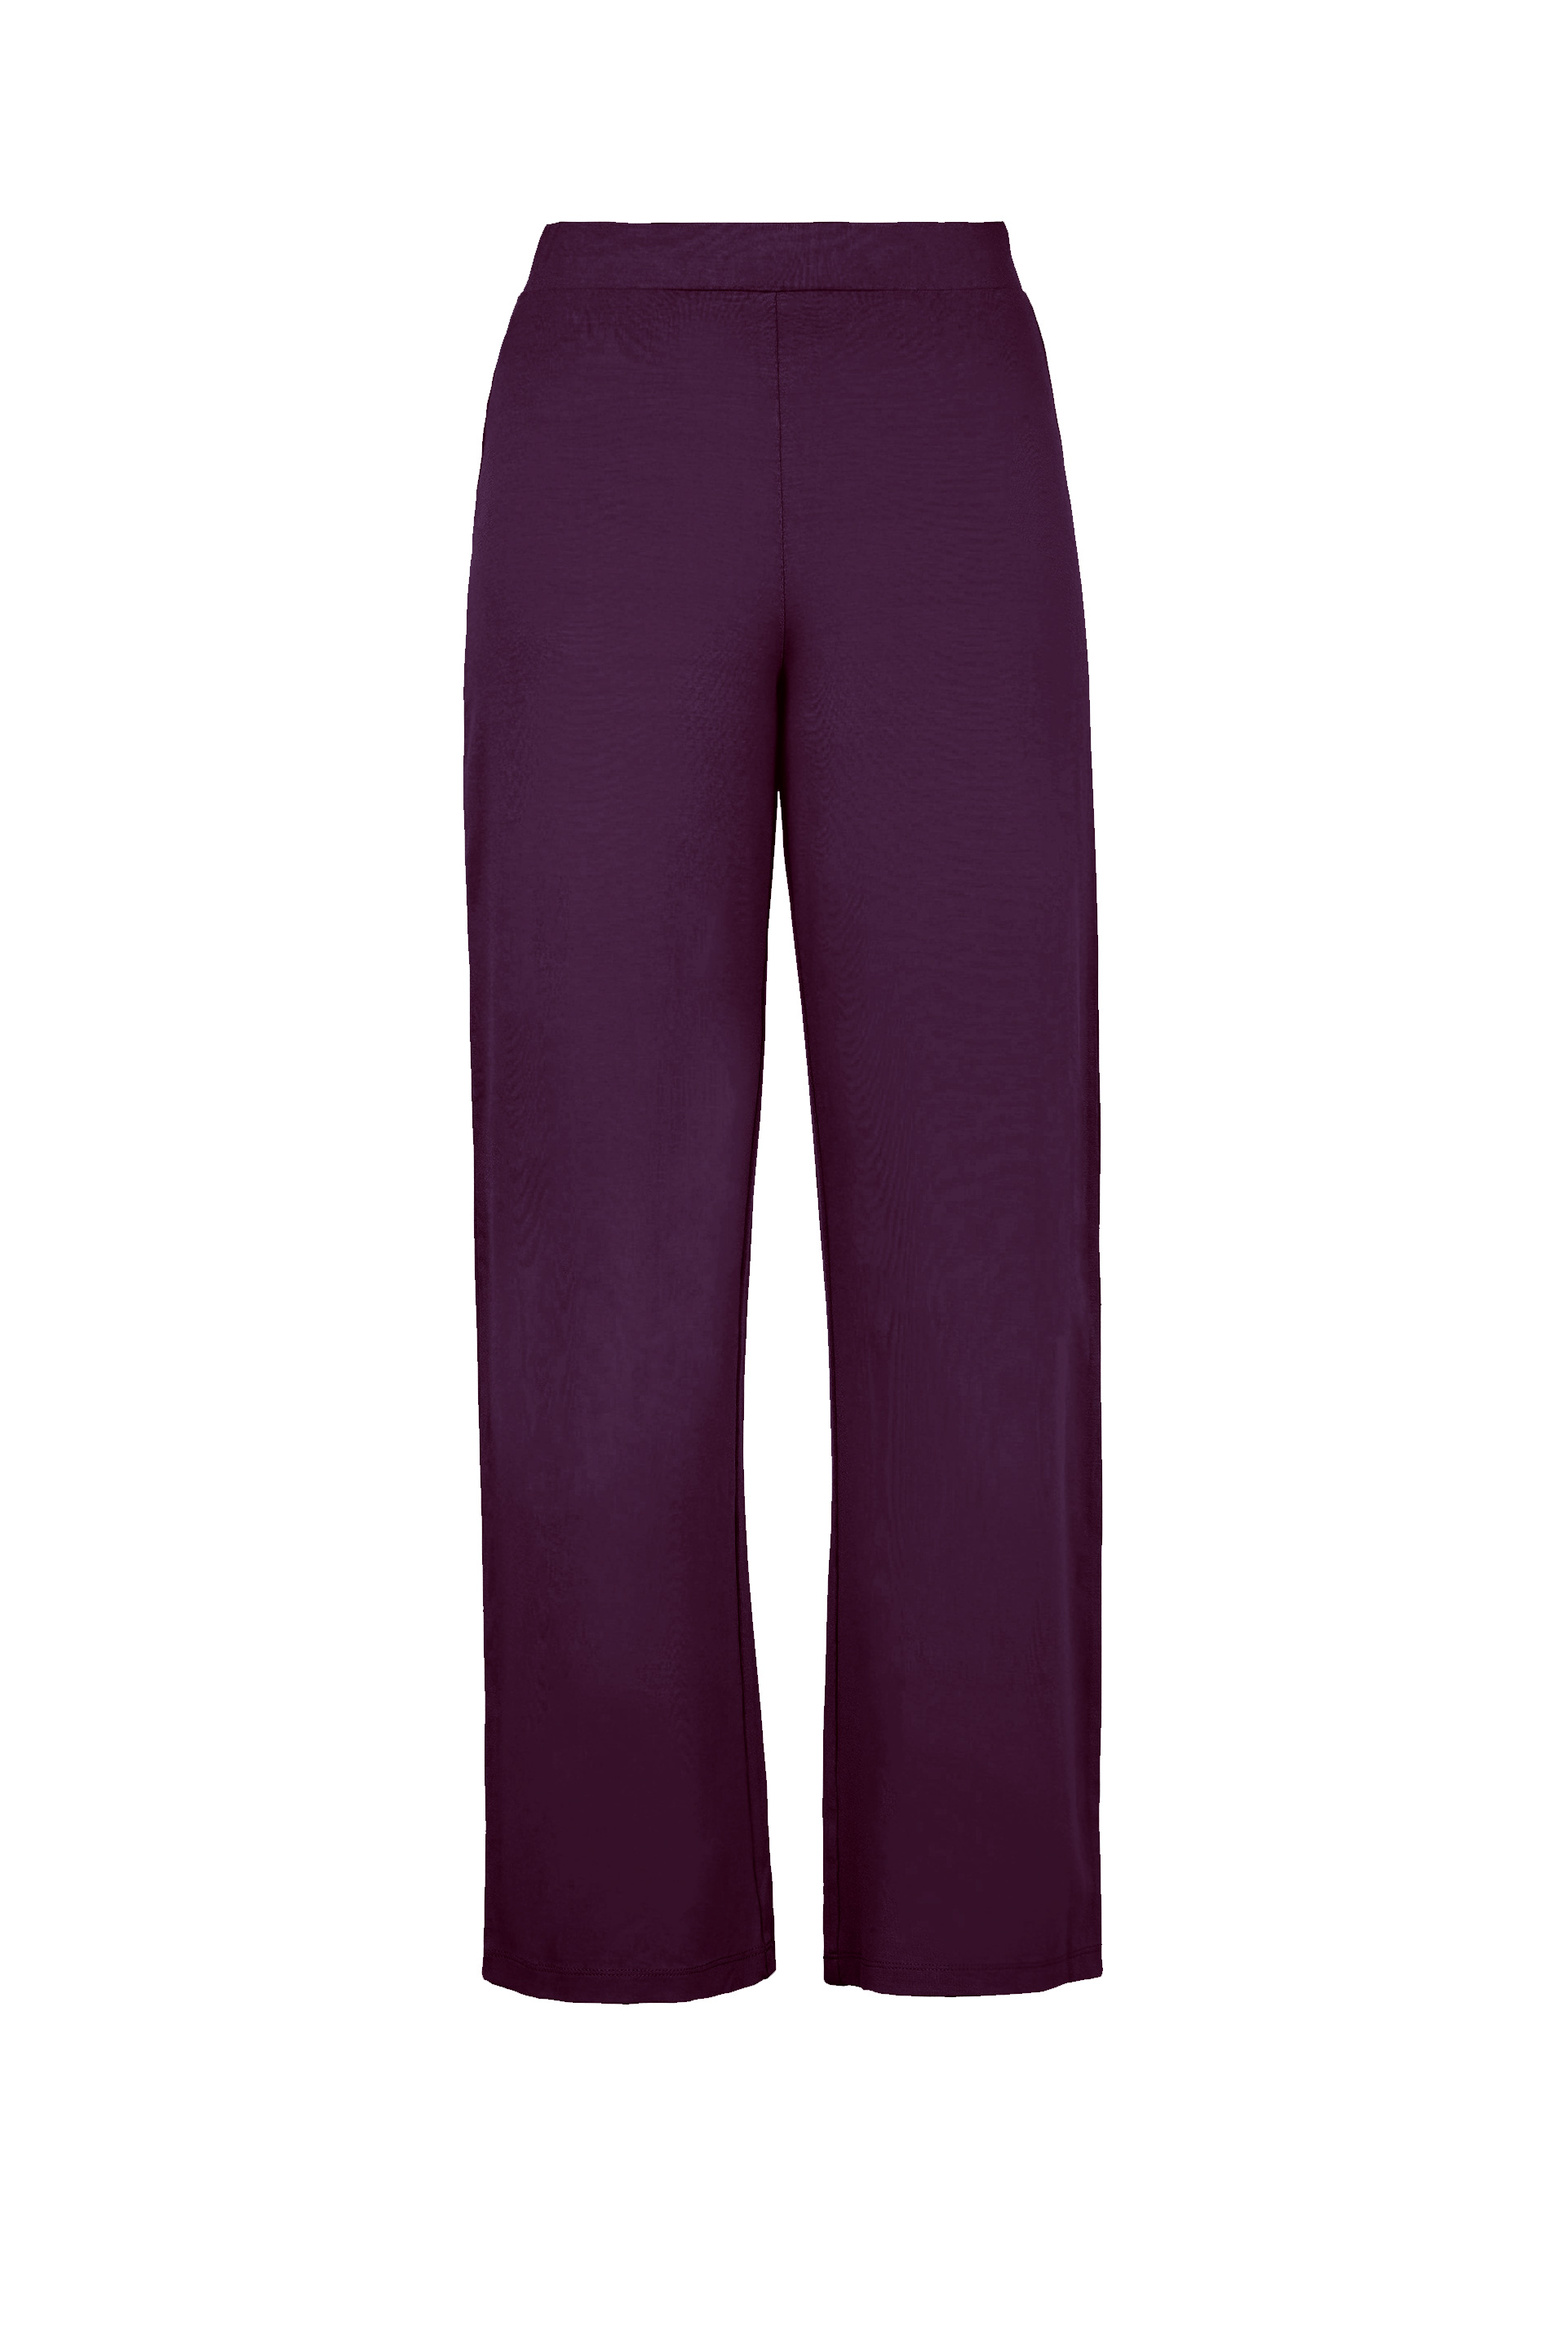 7057_lauren_jersey_trousers_plum_purple.jpg